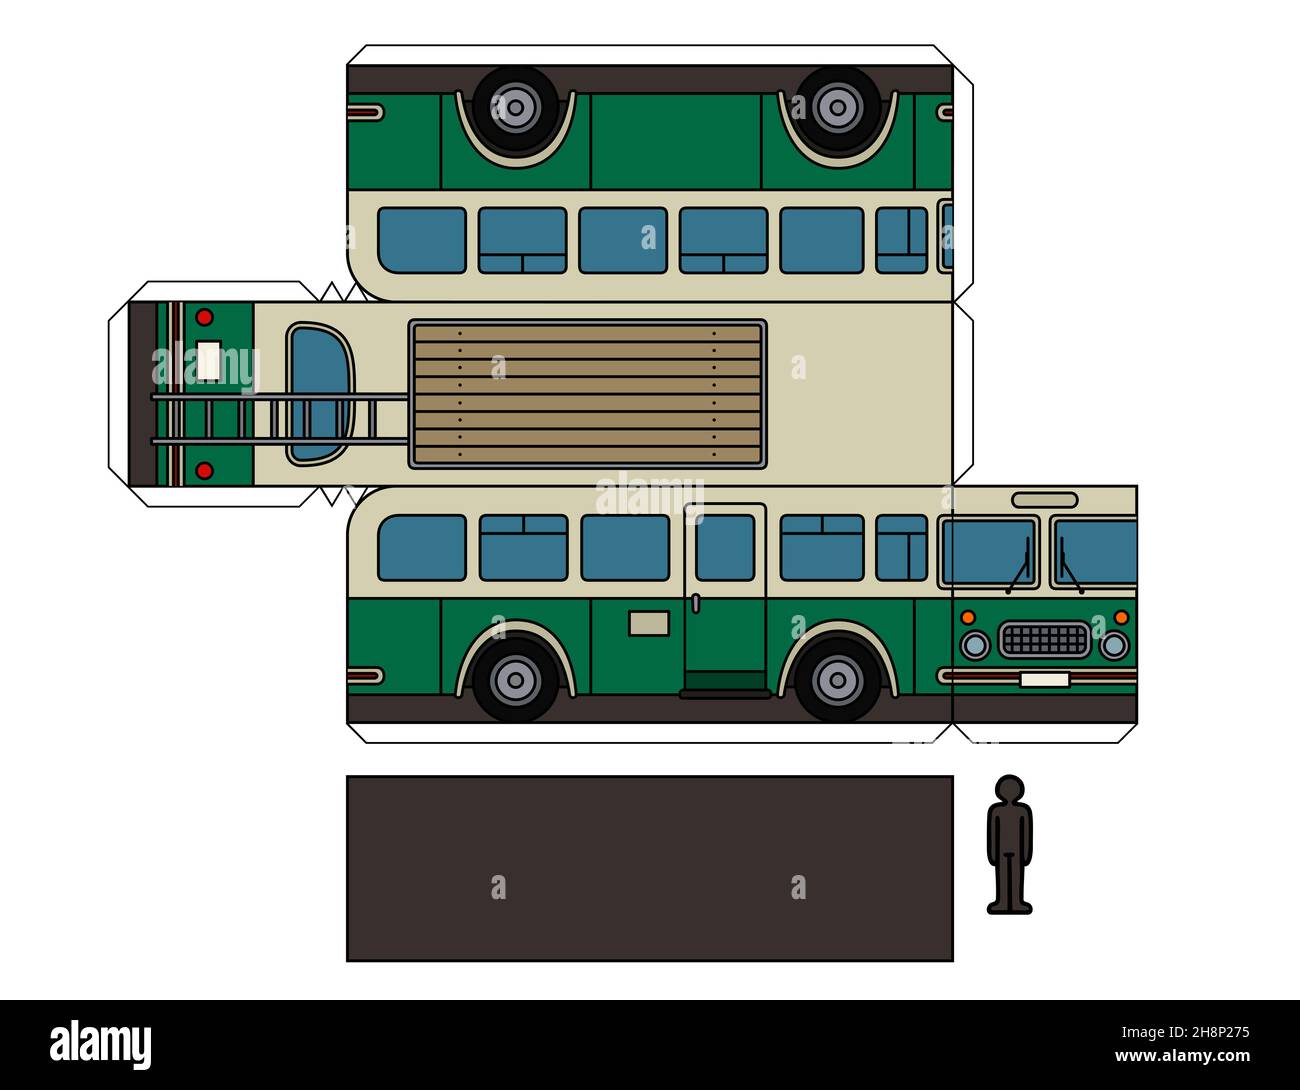 Modello cartaceo di un autobus verde e crema vintage Foto Stock